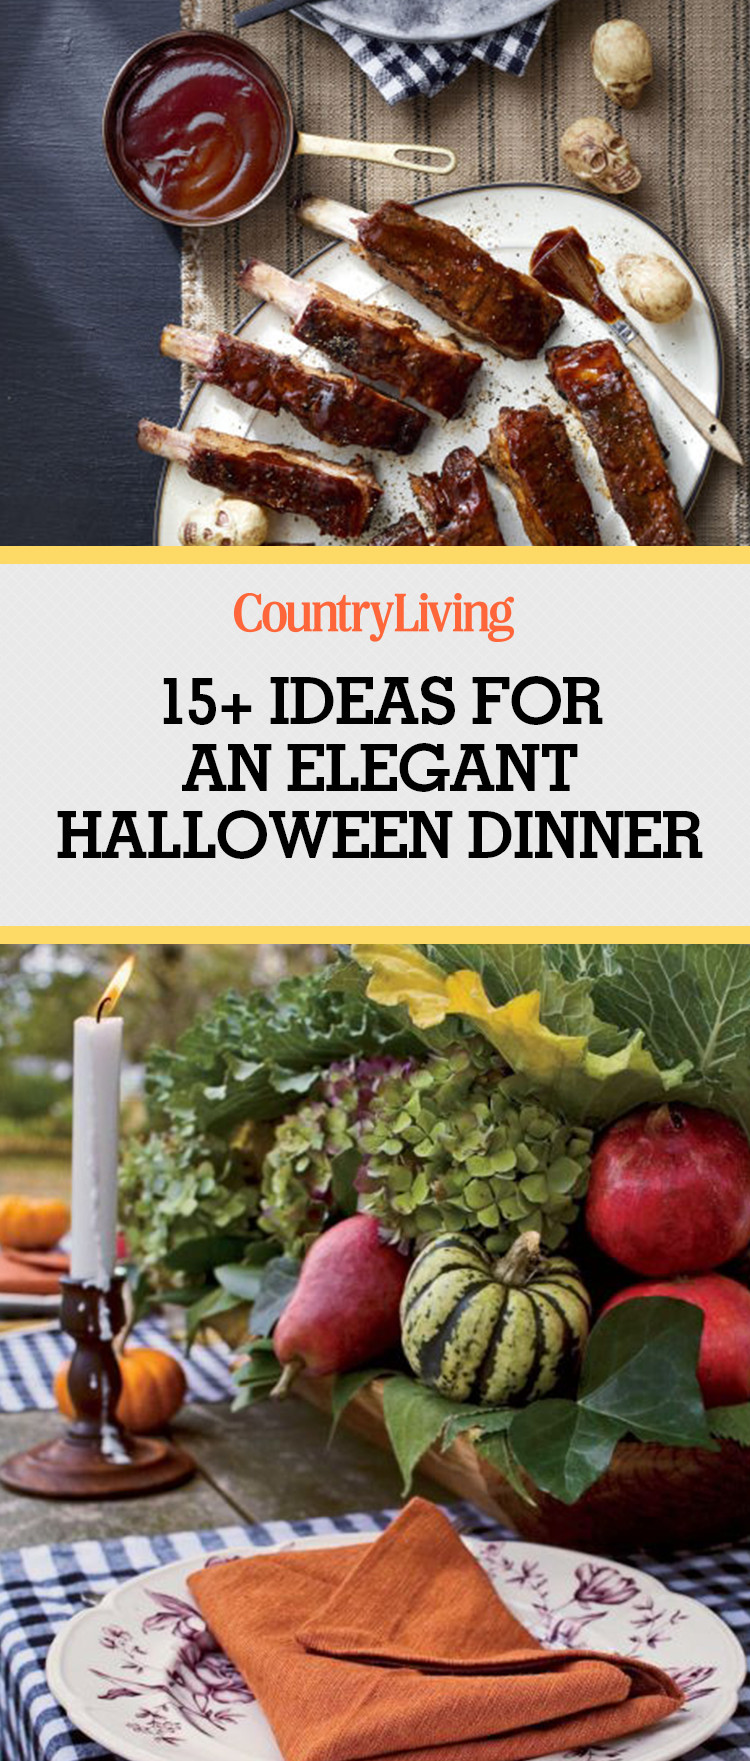 Halloween Dinner Recipes
 19 Halloween Dinner Ideas Menu for Halloween Dinner Party